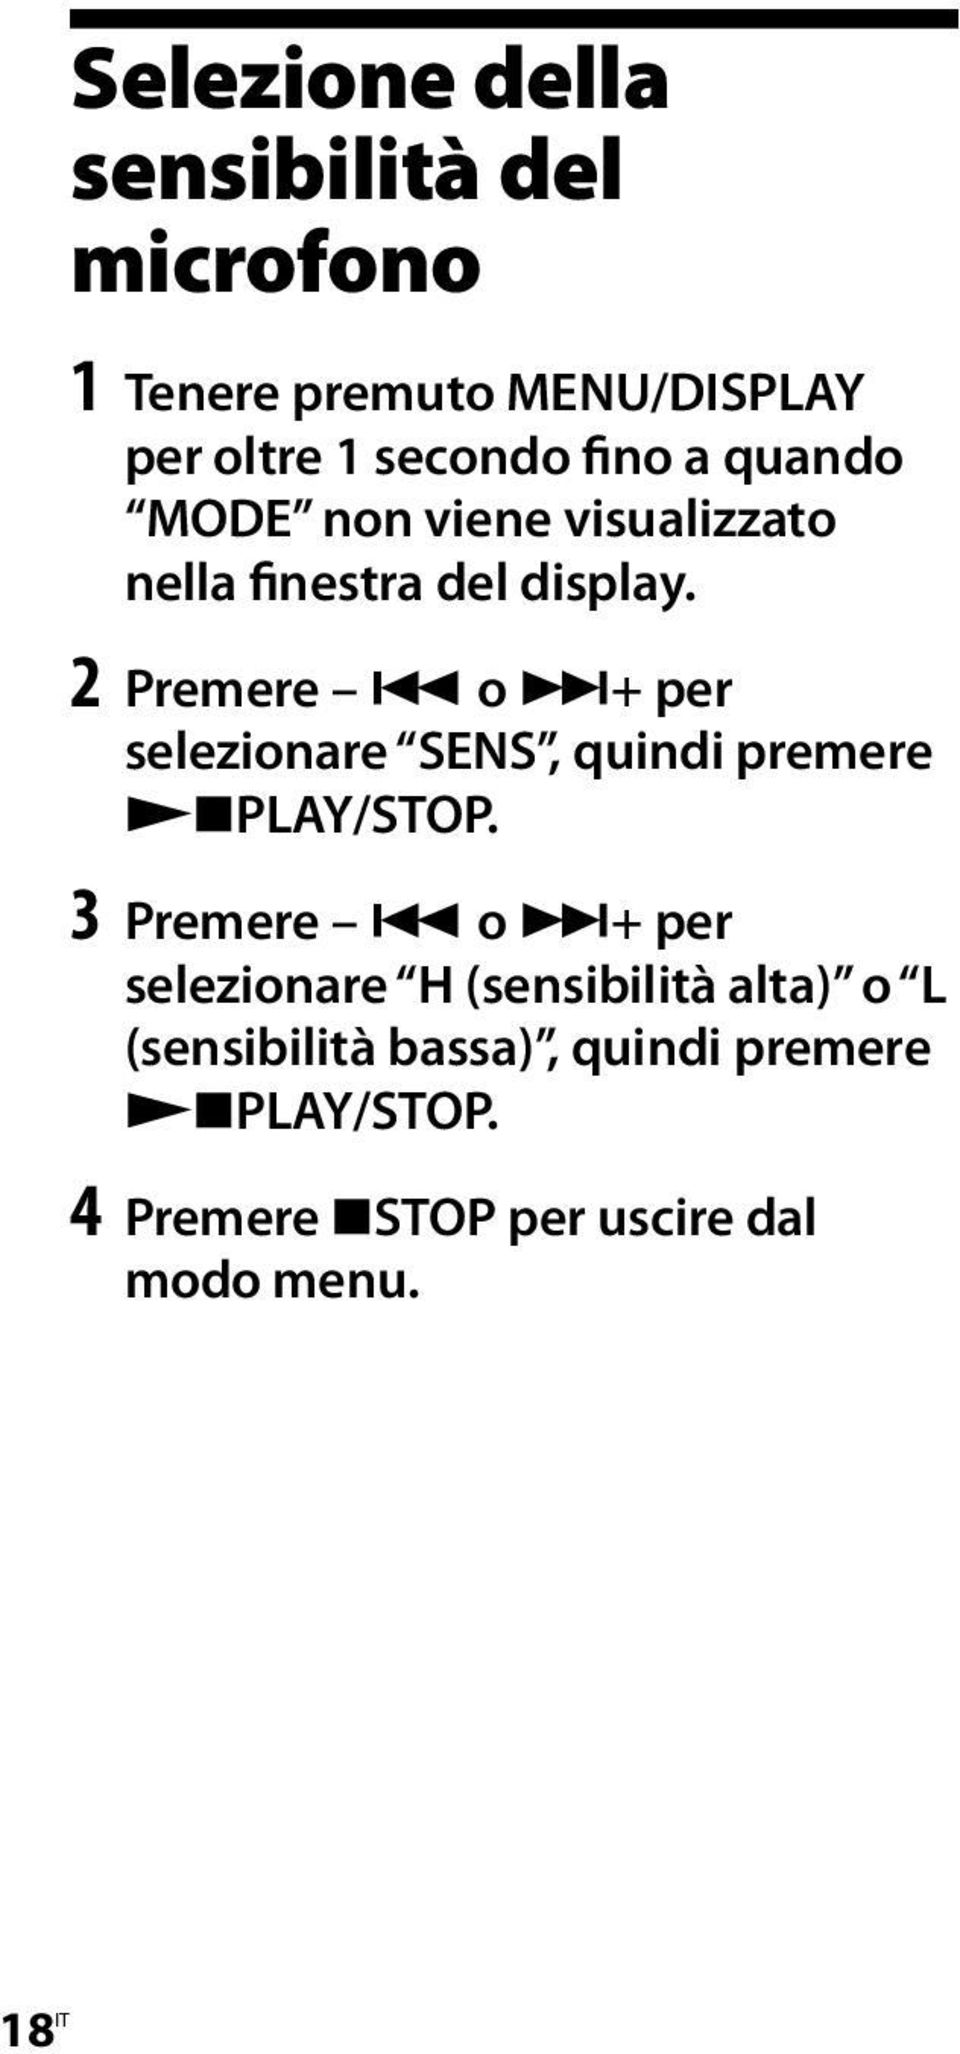 2 Premere o + per selezionare SENS, quindi premere PLAY/STOP.